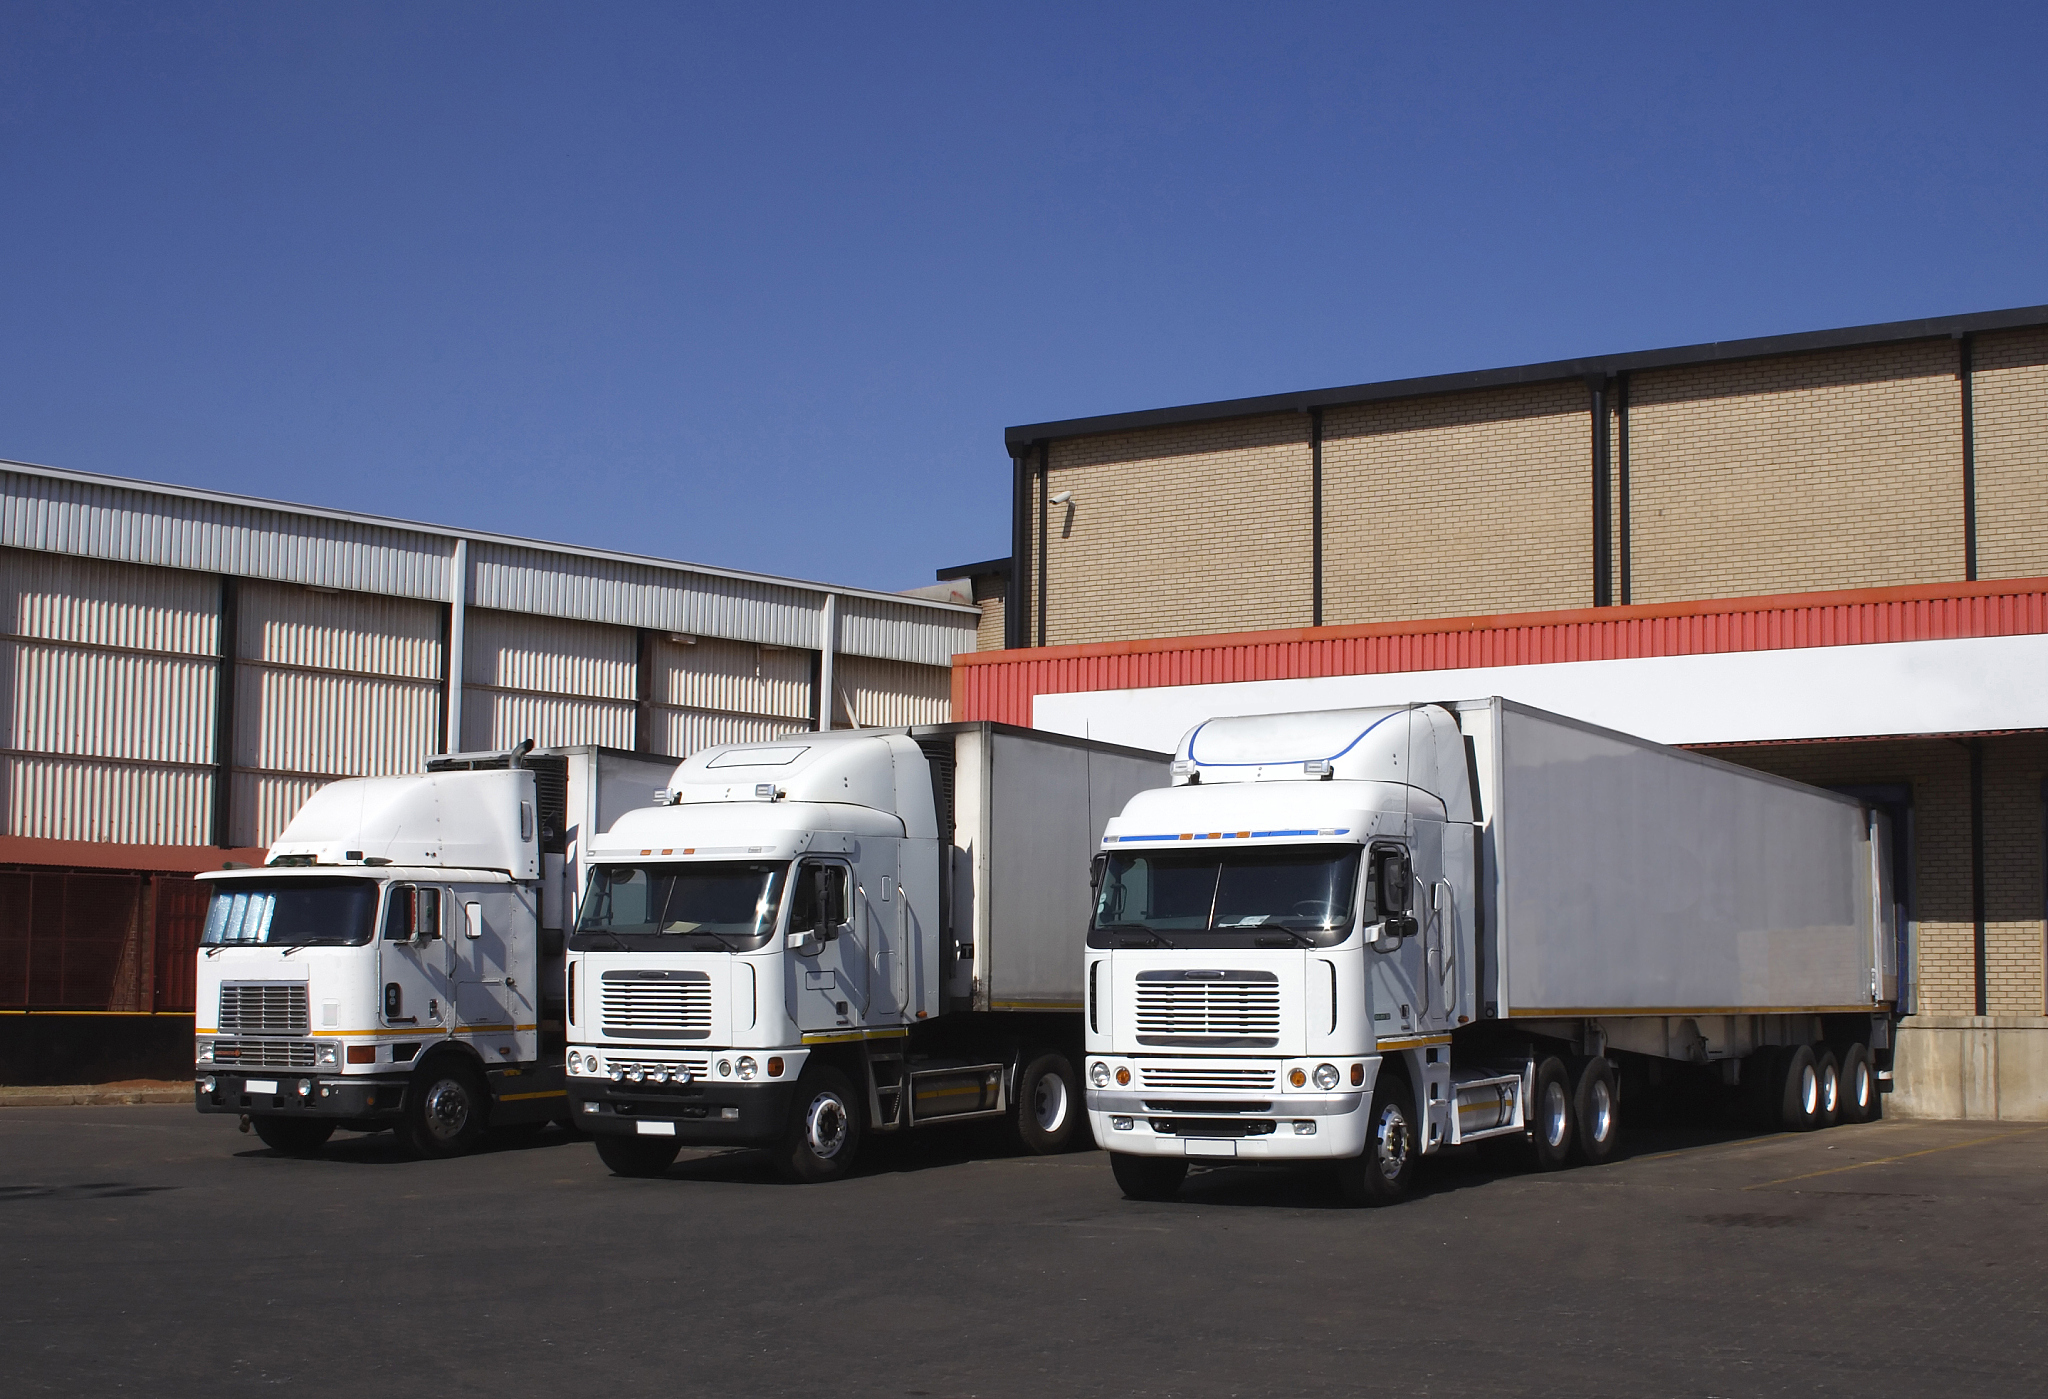 俄罗斯公司和伊朗公司合作创建一家汽车运输公司用于南北航线上的货物运输